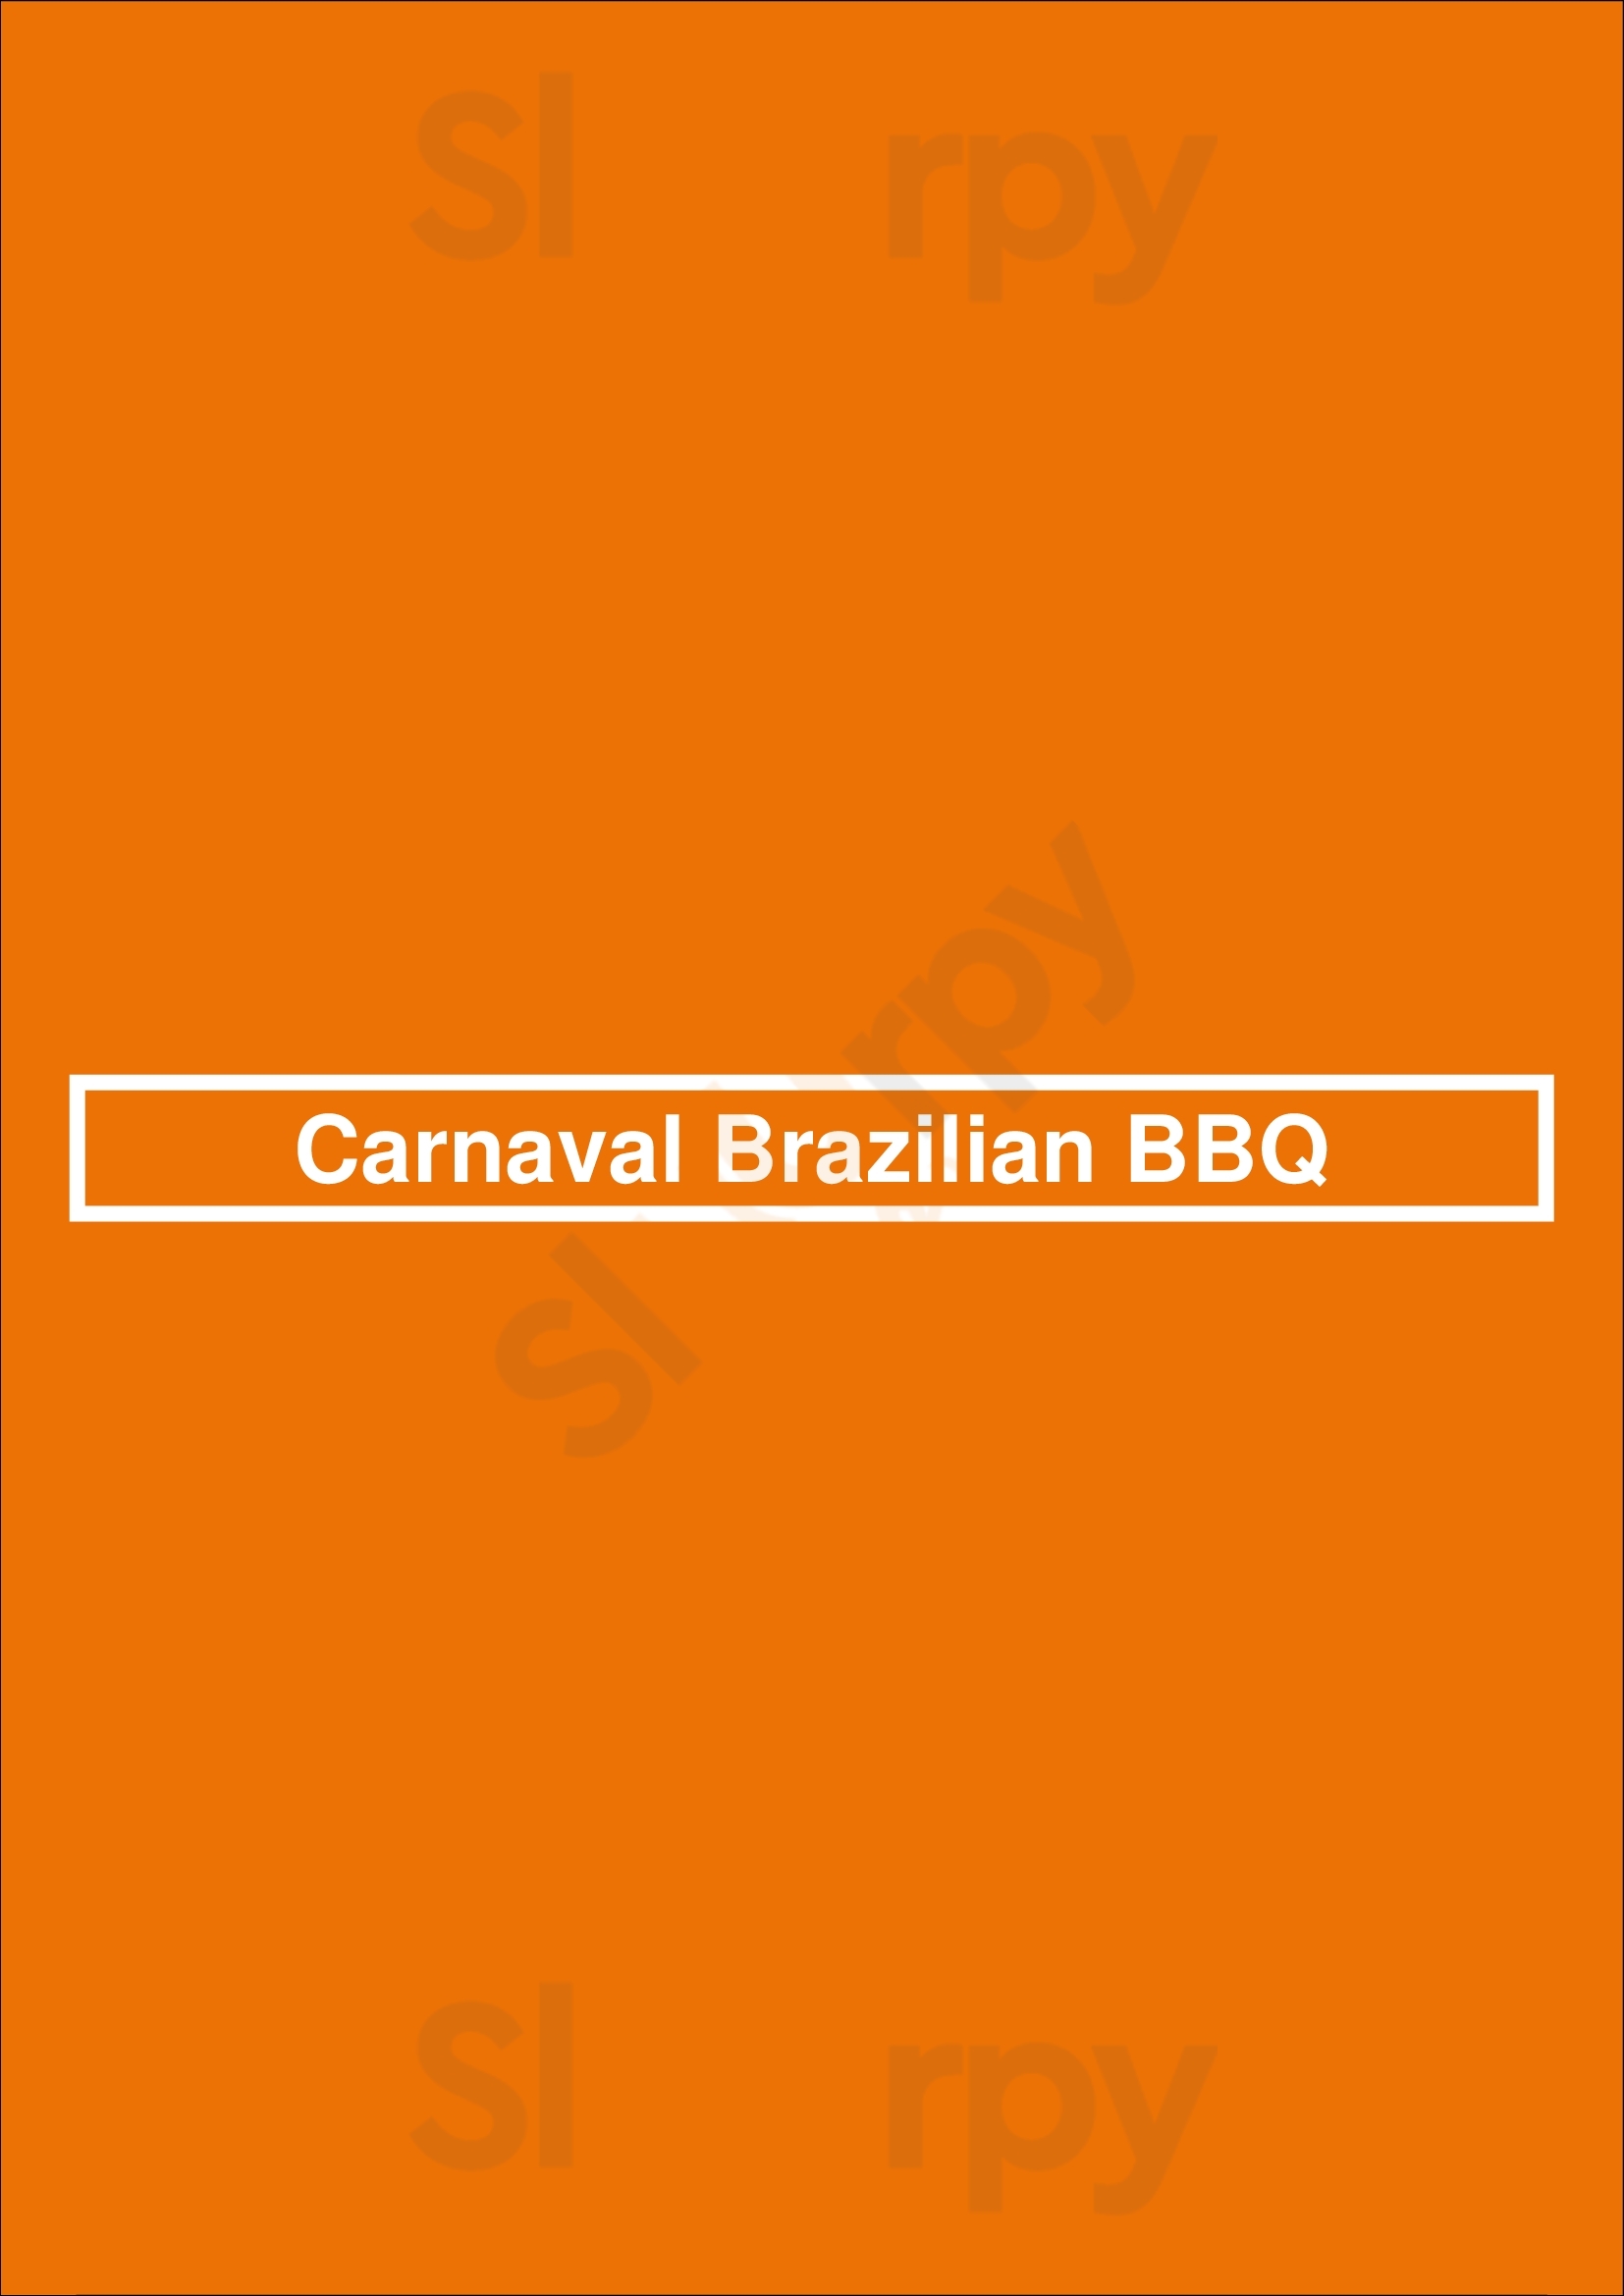 Carnaval Brazilian Bbq Winnipeg Menu - 1